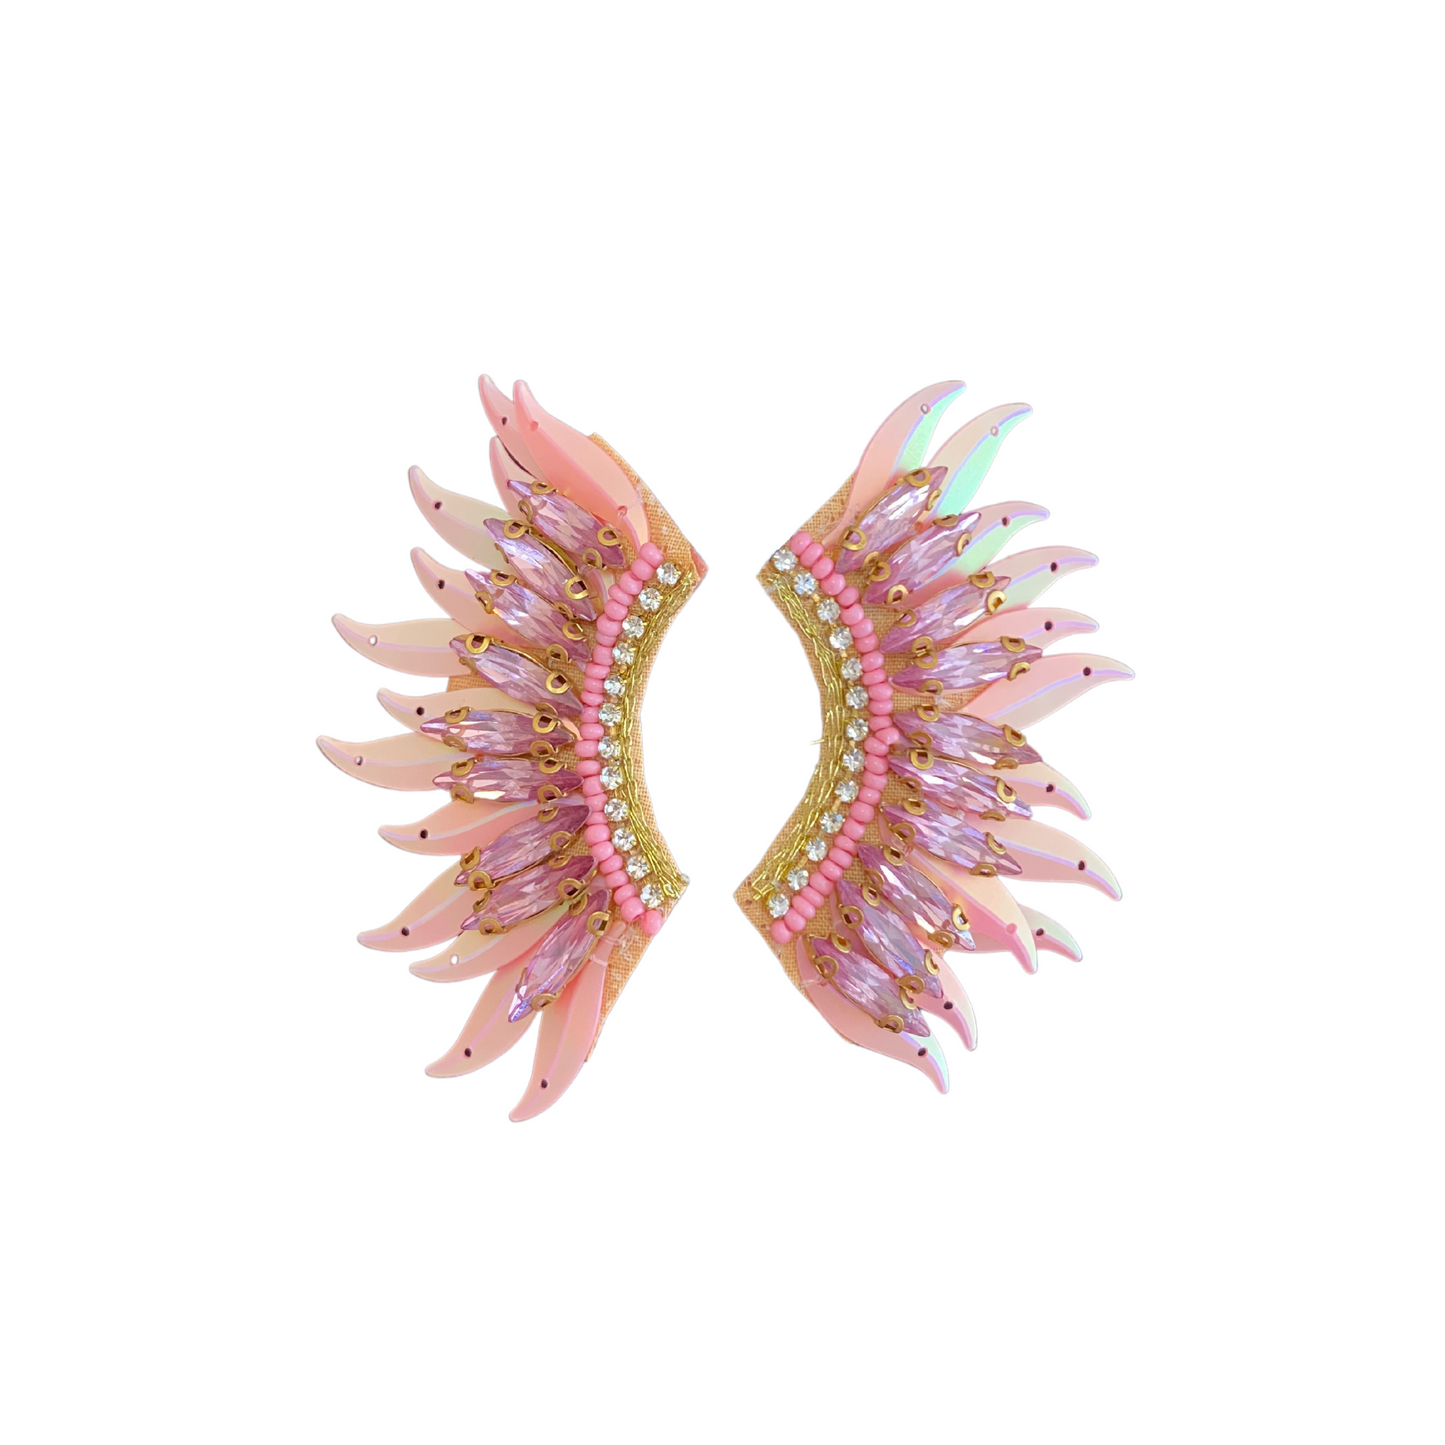 Light Pink Wing Earrings, Wing Earrings, Earrings, Fashion Accessories, Accessories